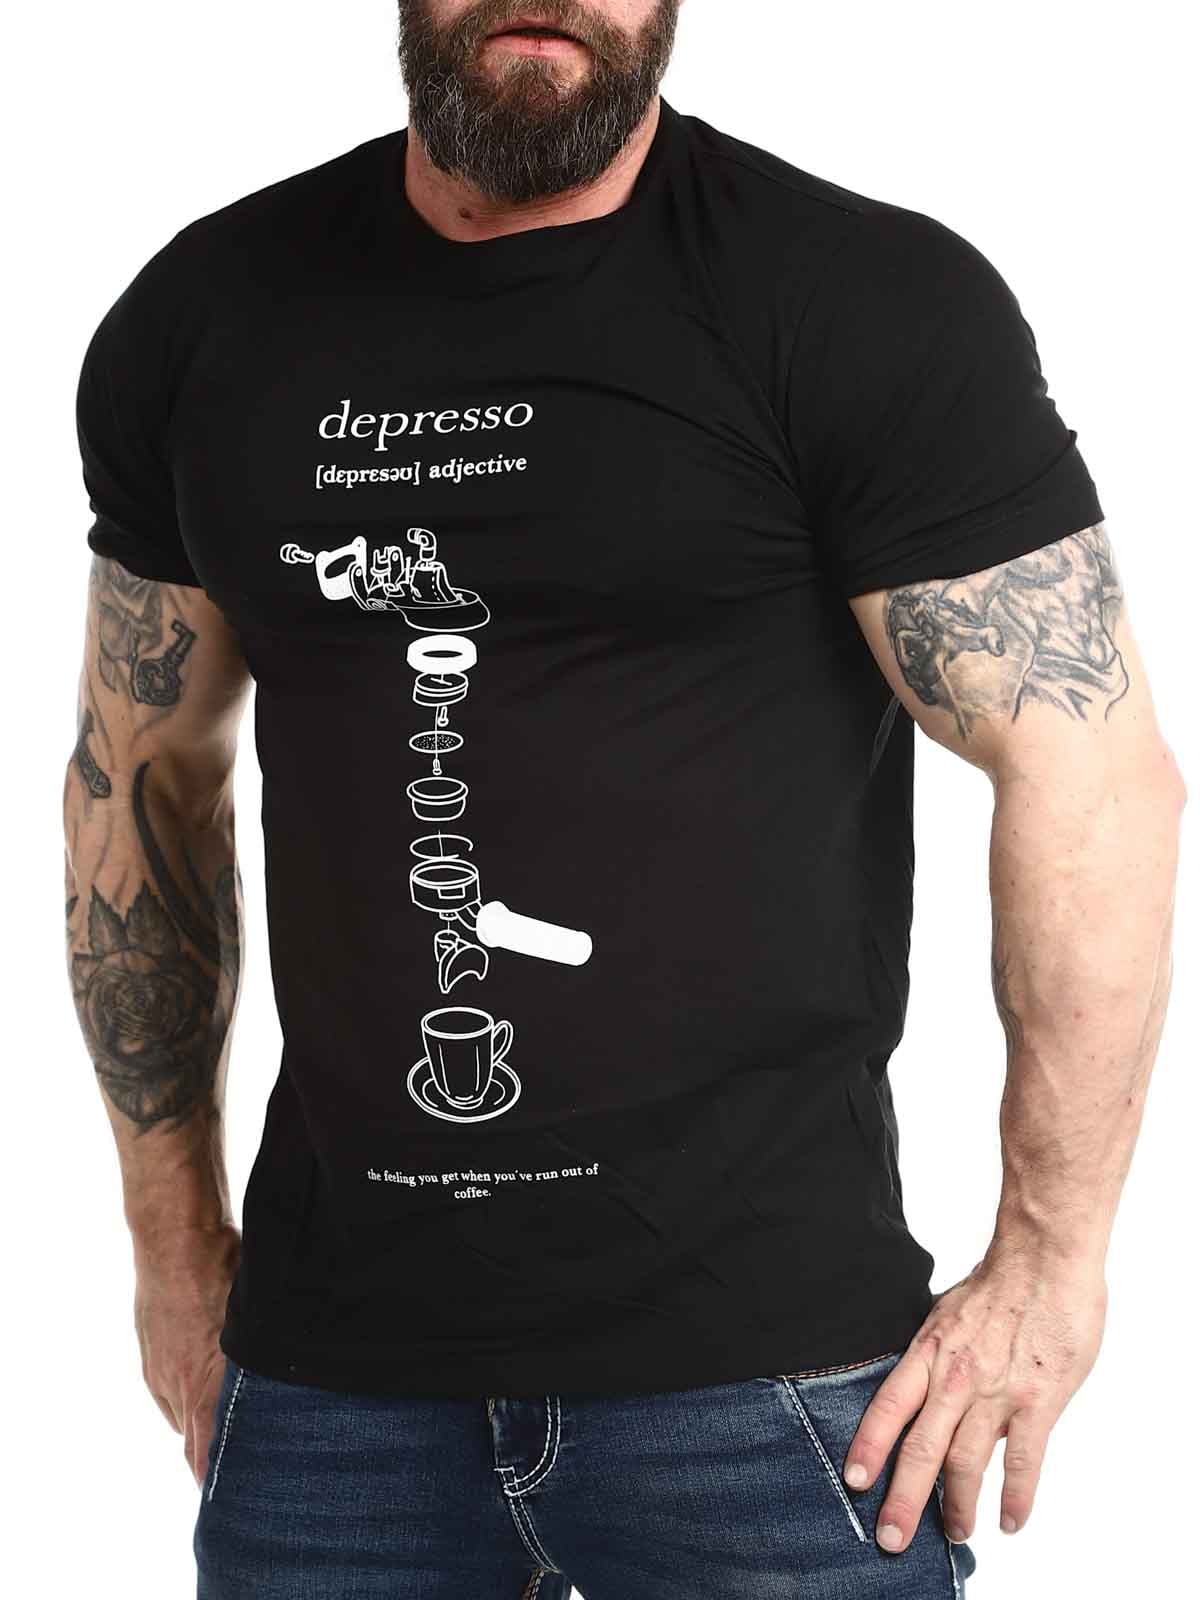 Depresso-Tshirt_3.jpg